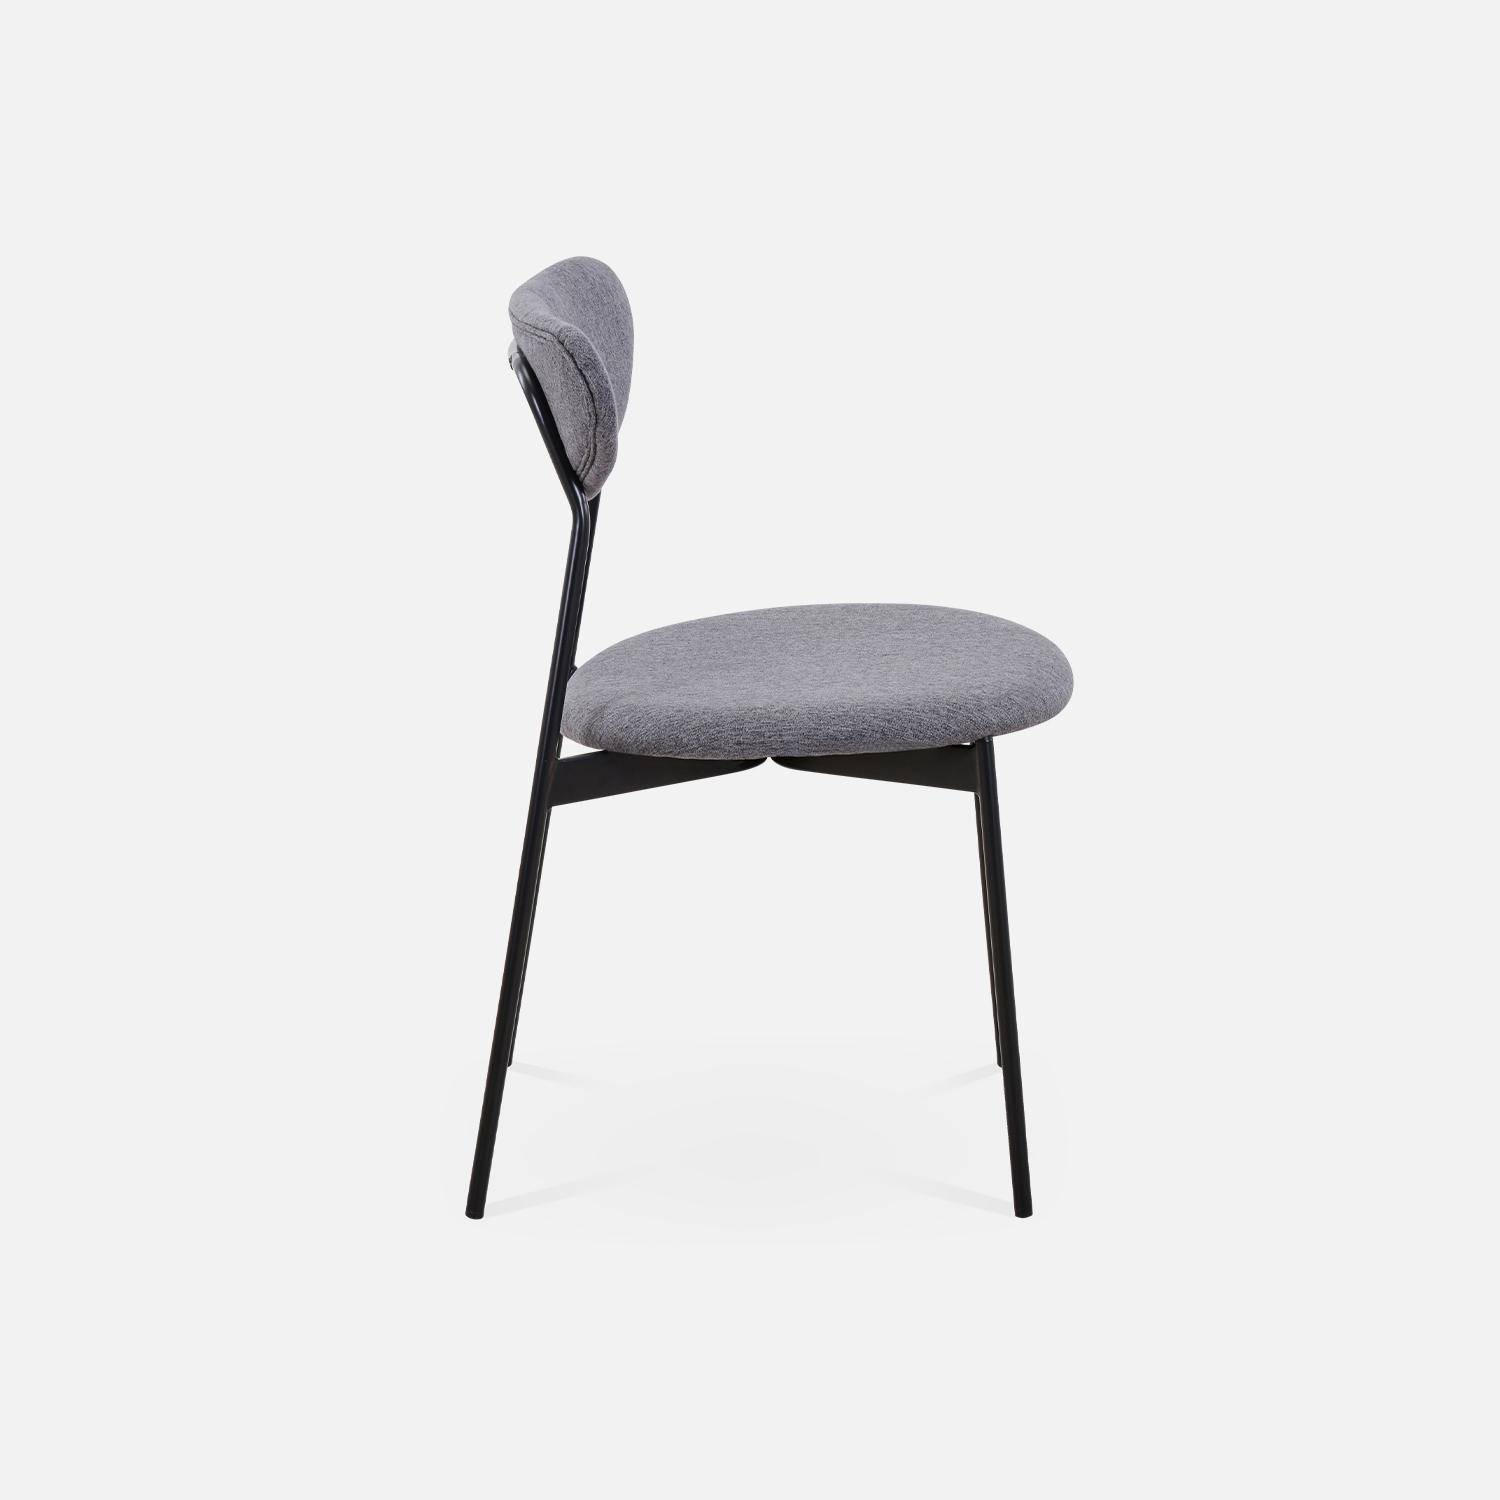 Juego de 4 sillas - Arty - Escandinavas y vintage, asiento y respaldo gris oscuro, patas de acero  Photo5